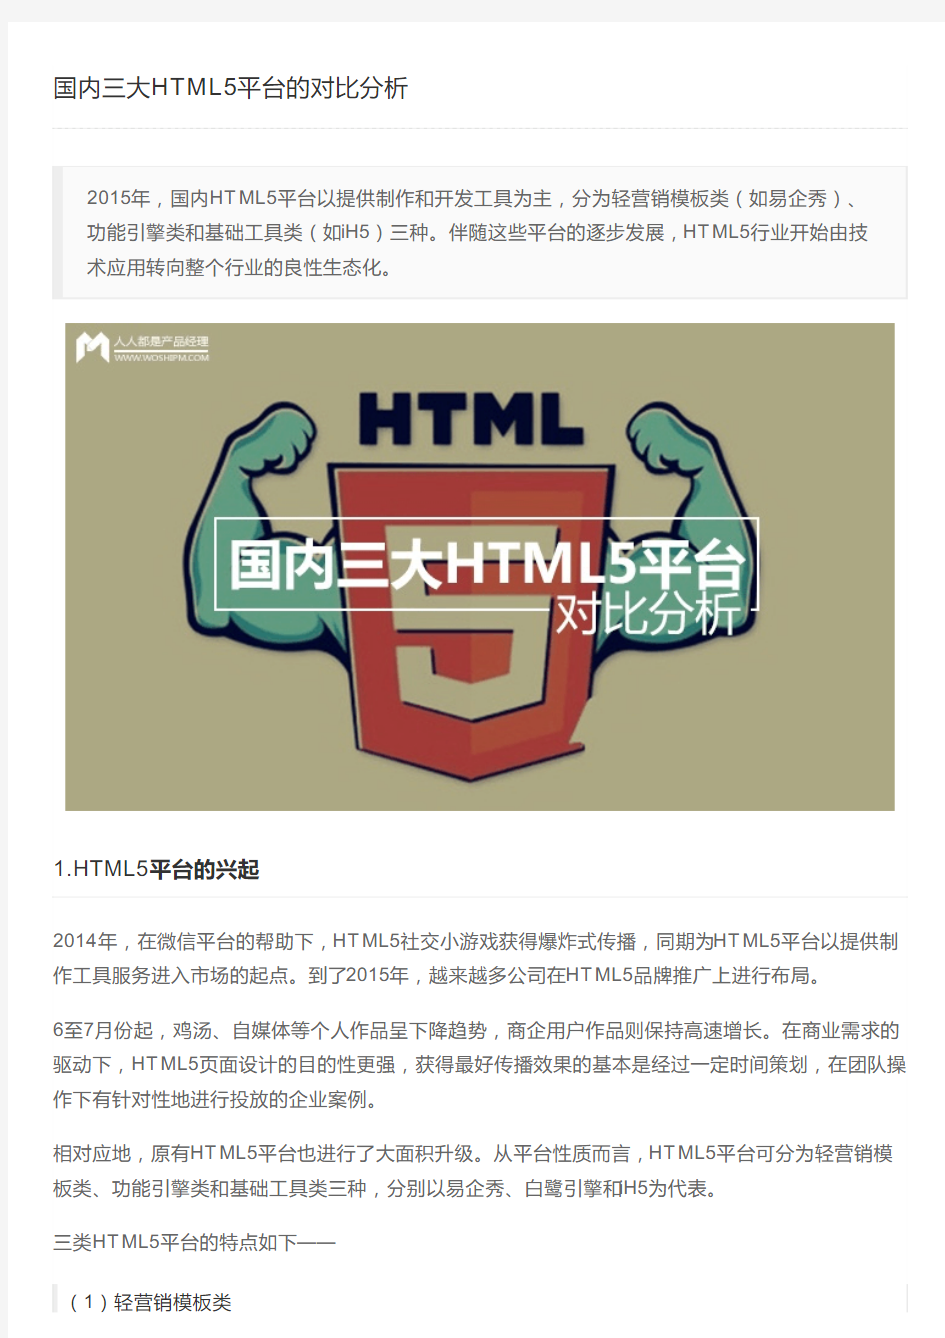 国内三大HTML5平台的对比分析